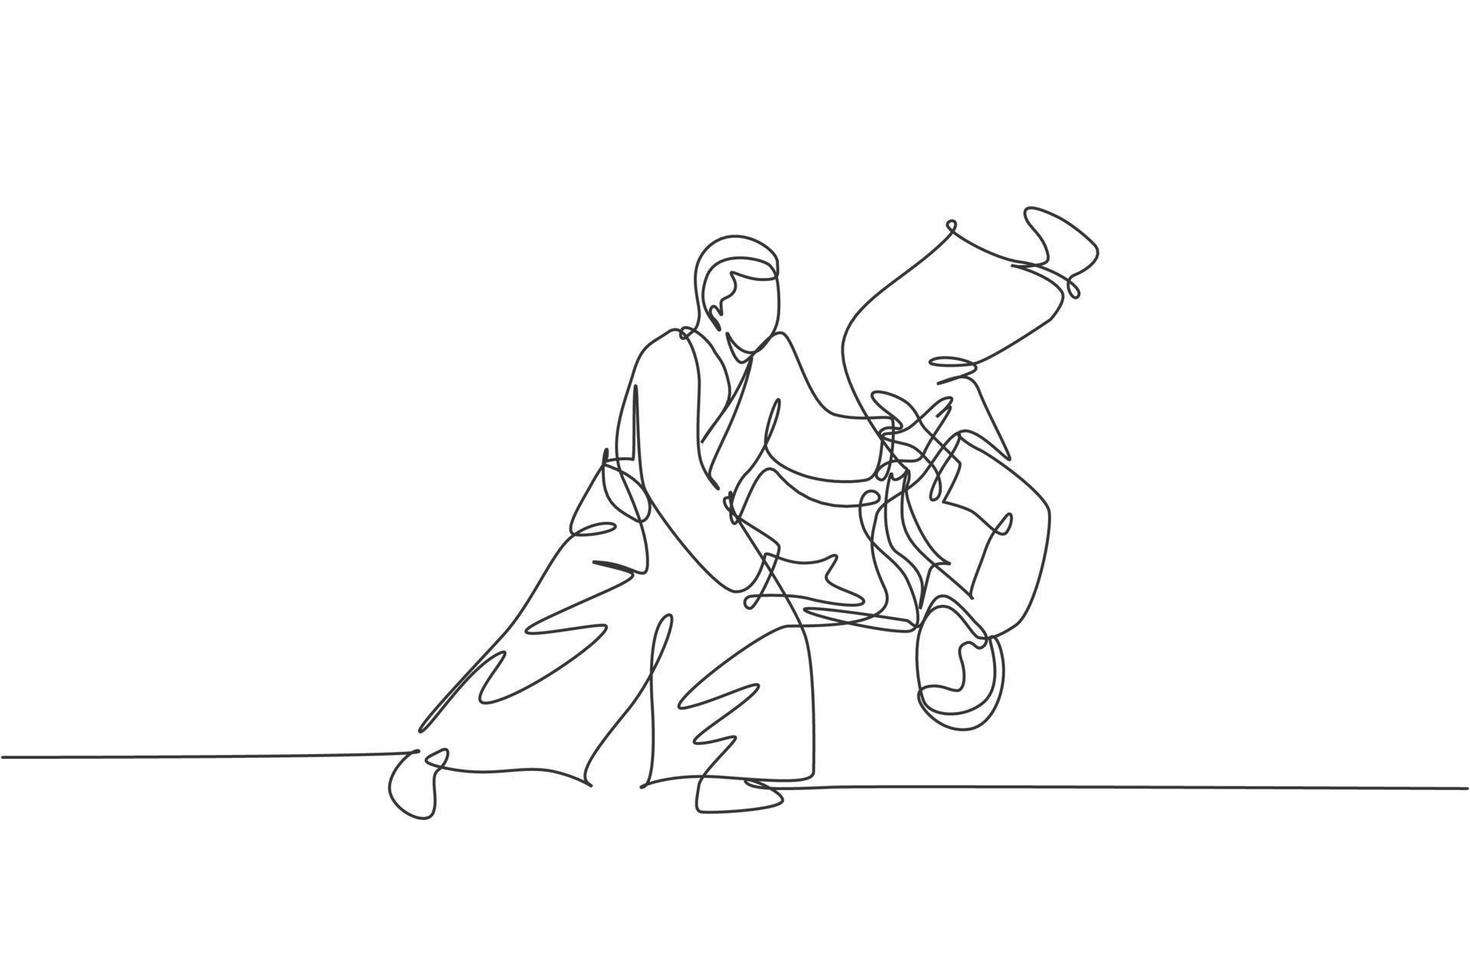 disegno a linea continua di un giovane sportivo che indossa il kimono e pratica il lancio del nemico nella tecnica di combattimento dell'aikido. concetto di arte marziale giapponese. illustrazione vettoriale di design alla moda con una linea di disegno